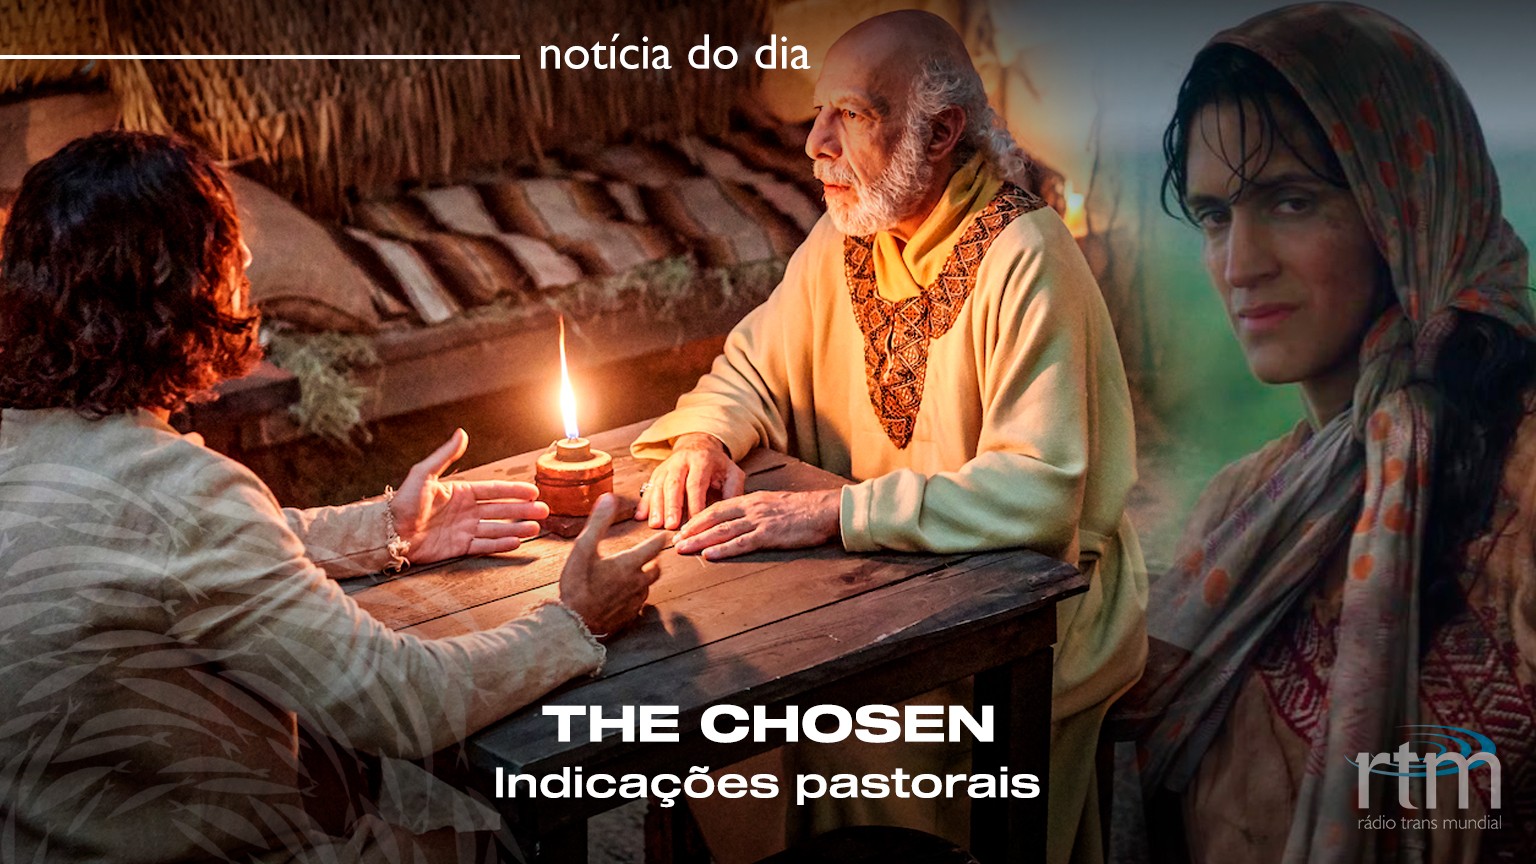 The chosen', estrelada por Jesus, fez o milagre da multiplicação de fãs -  Cultura - Estado de Minas